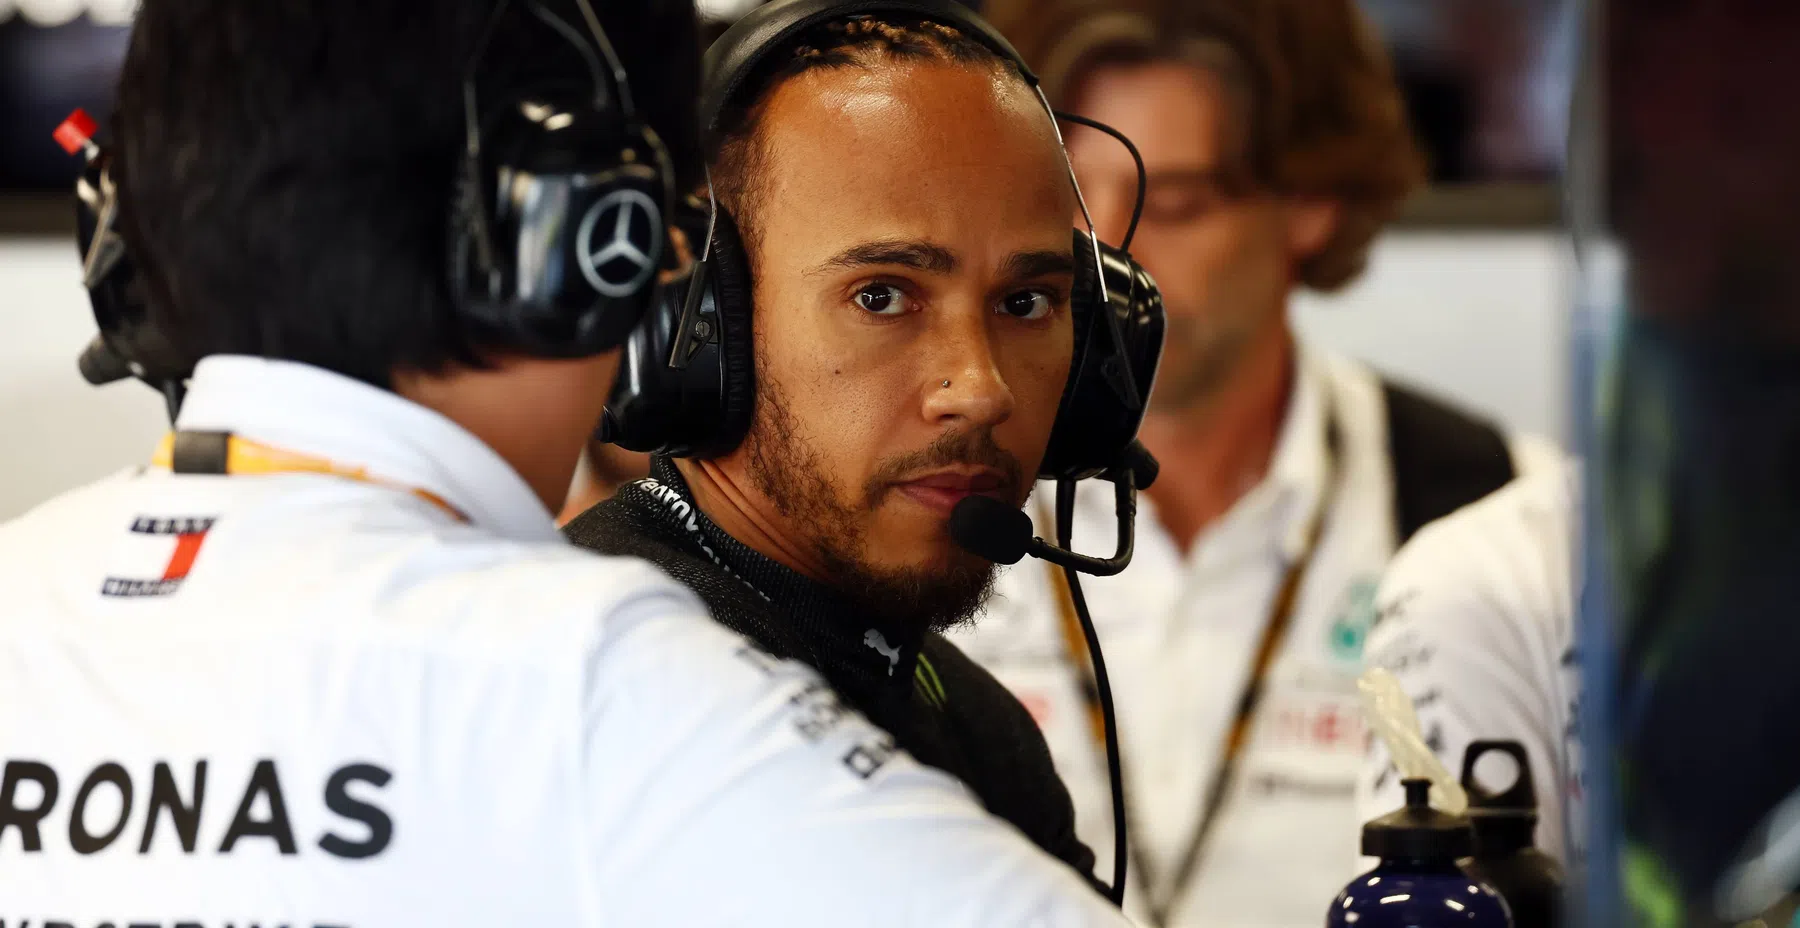 Hamilton grateful despite difficult year in F1